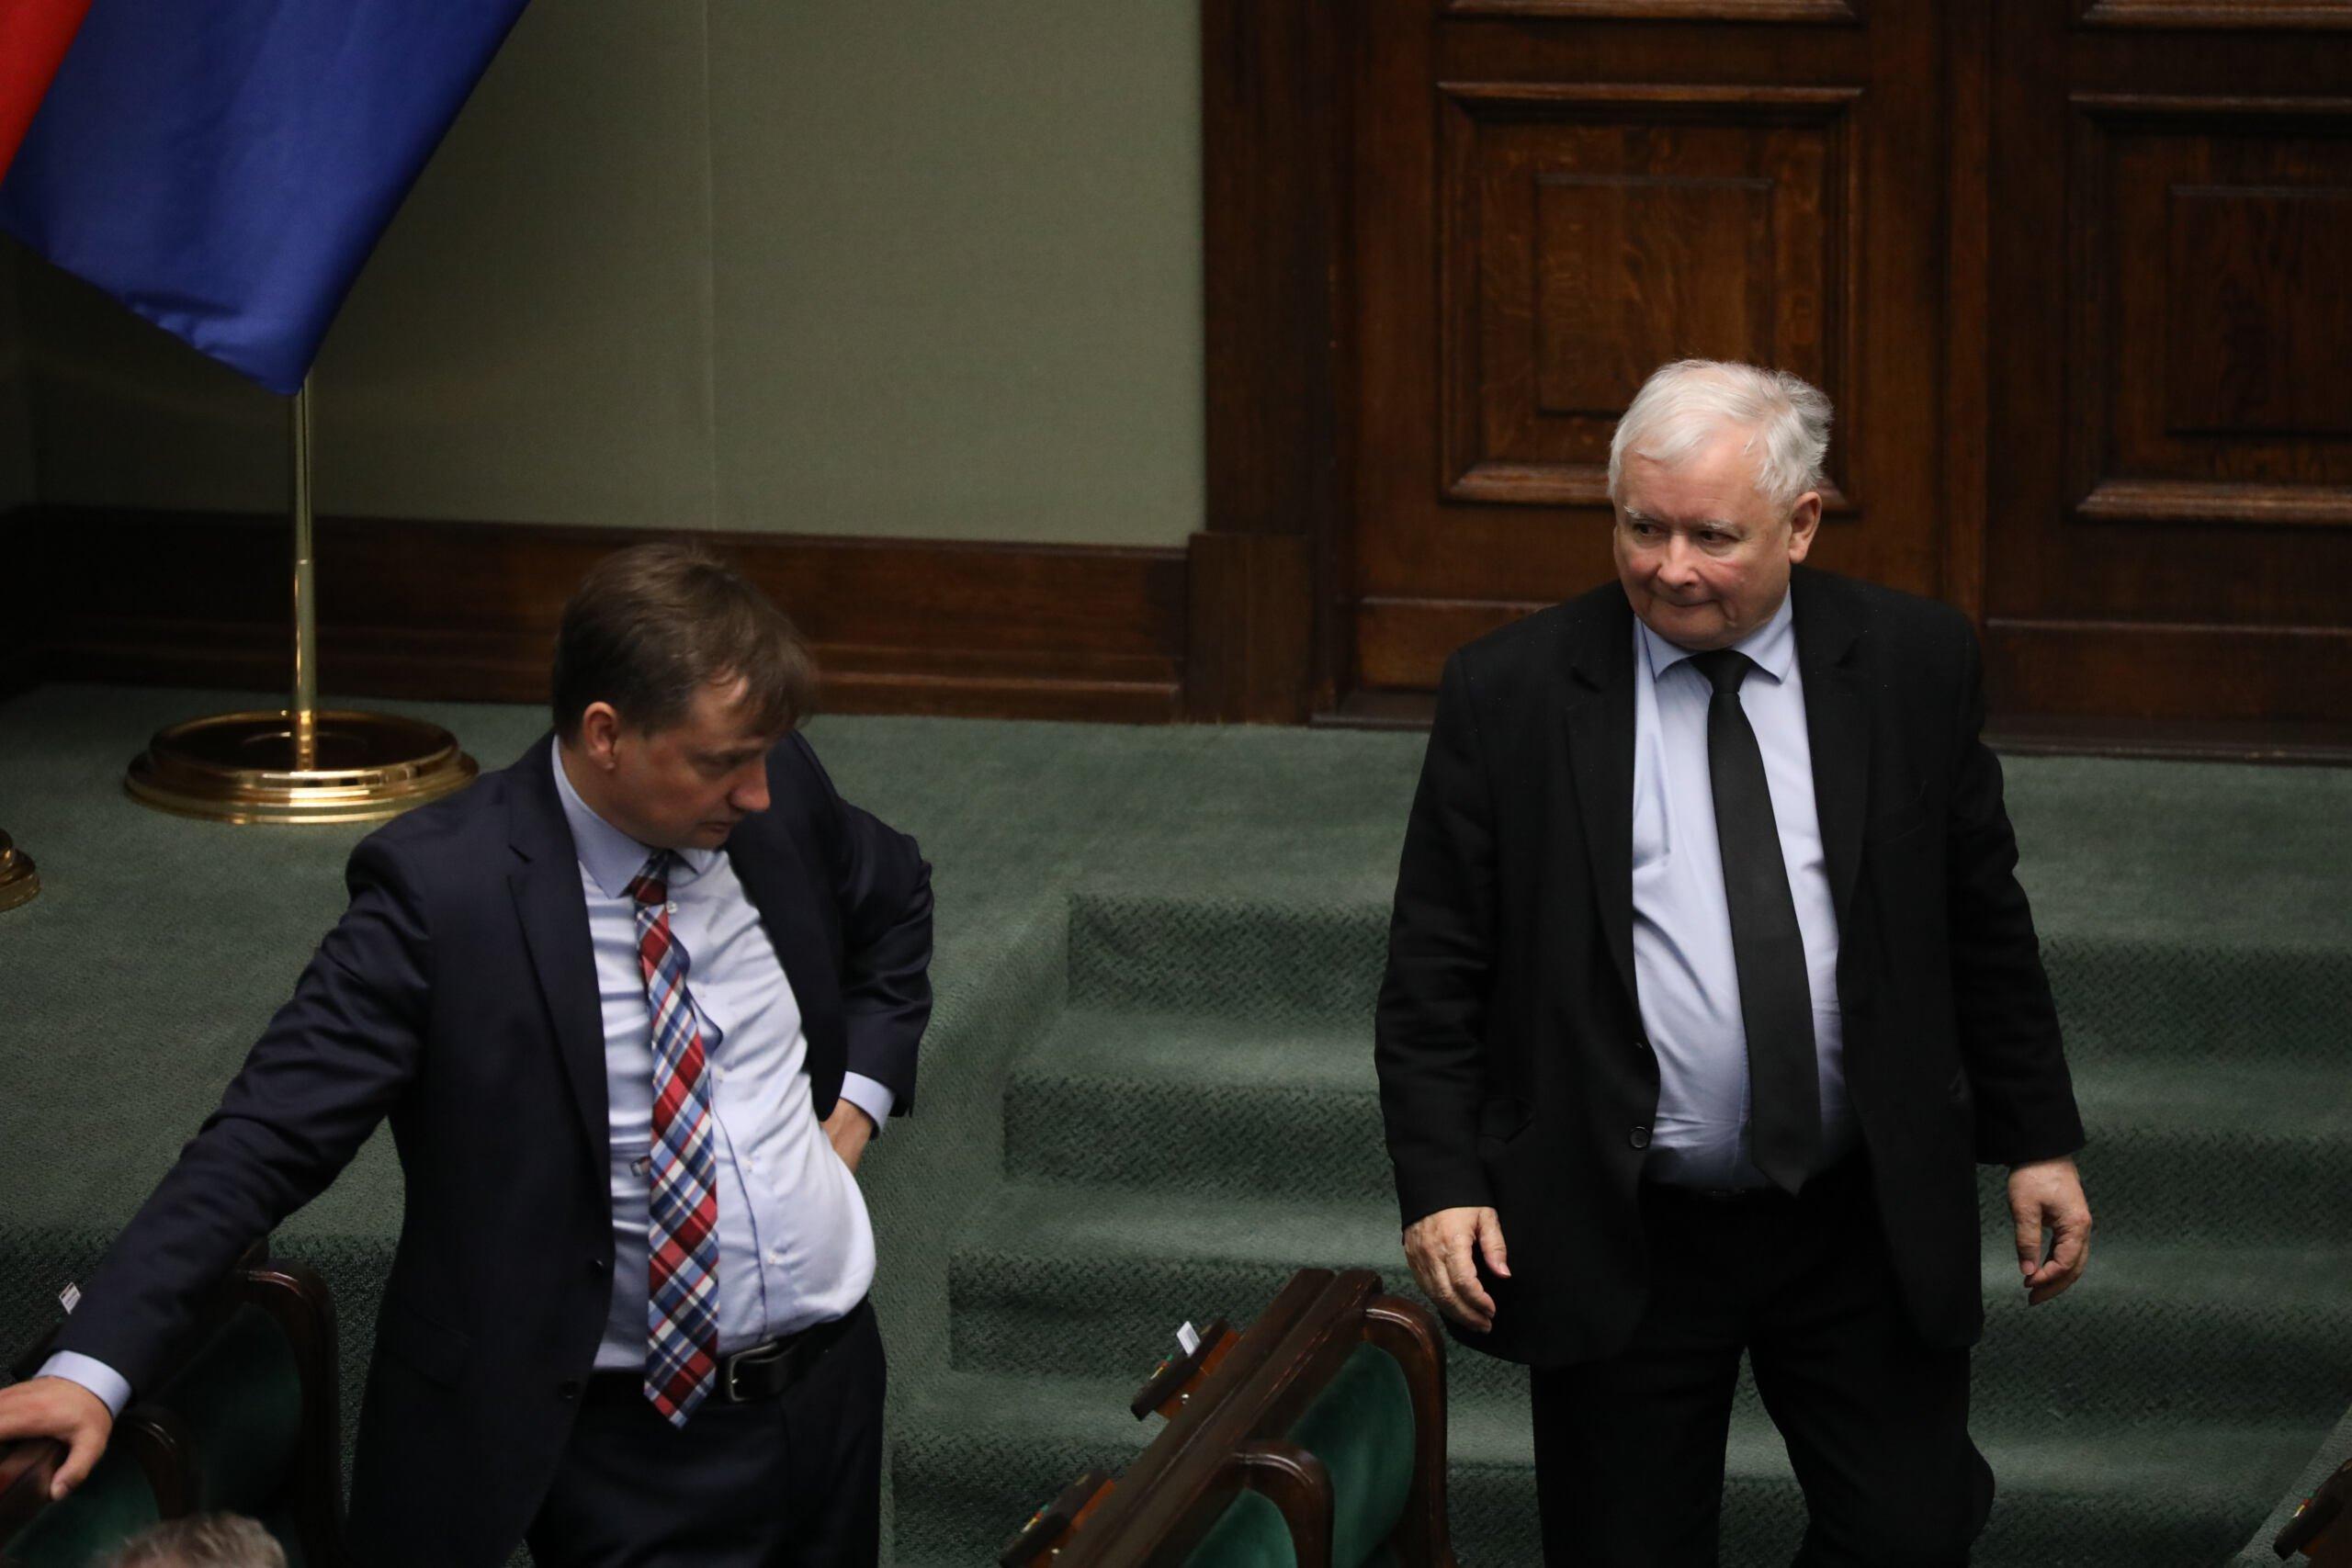 Zbigniew Ziobro i Jarosław Kaczyński w Sejmie